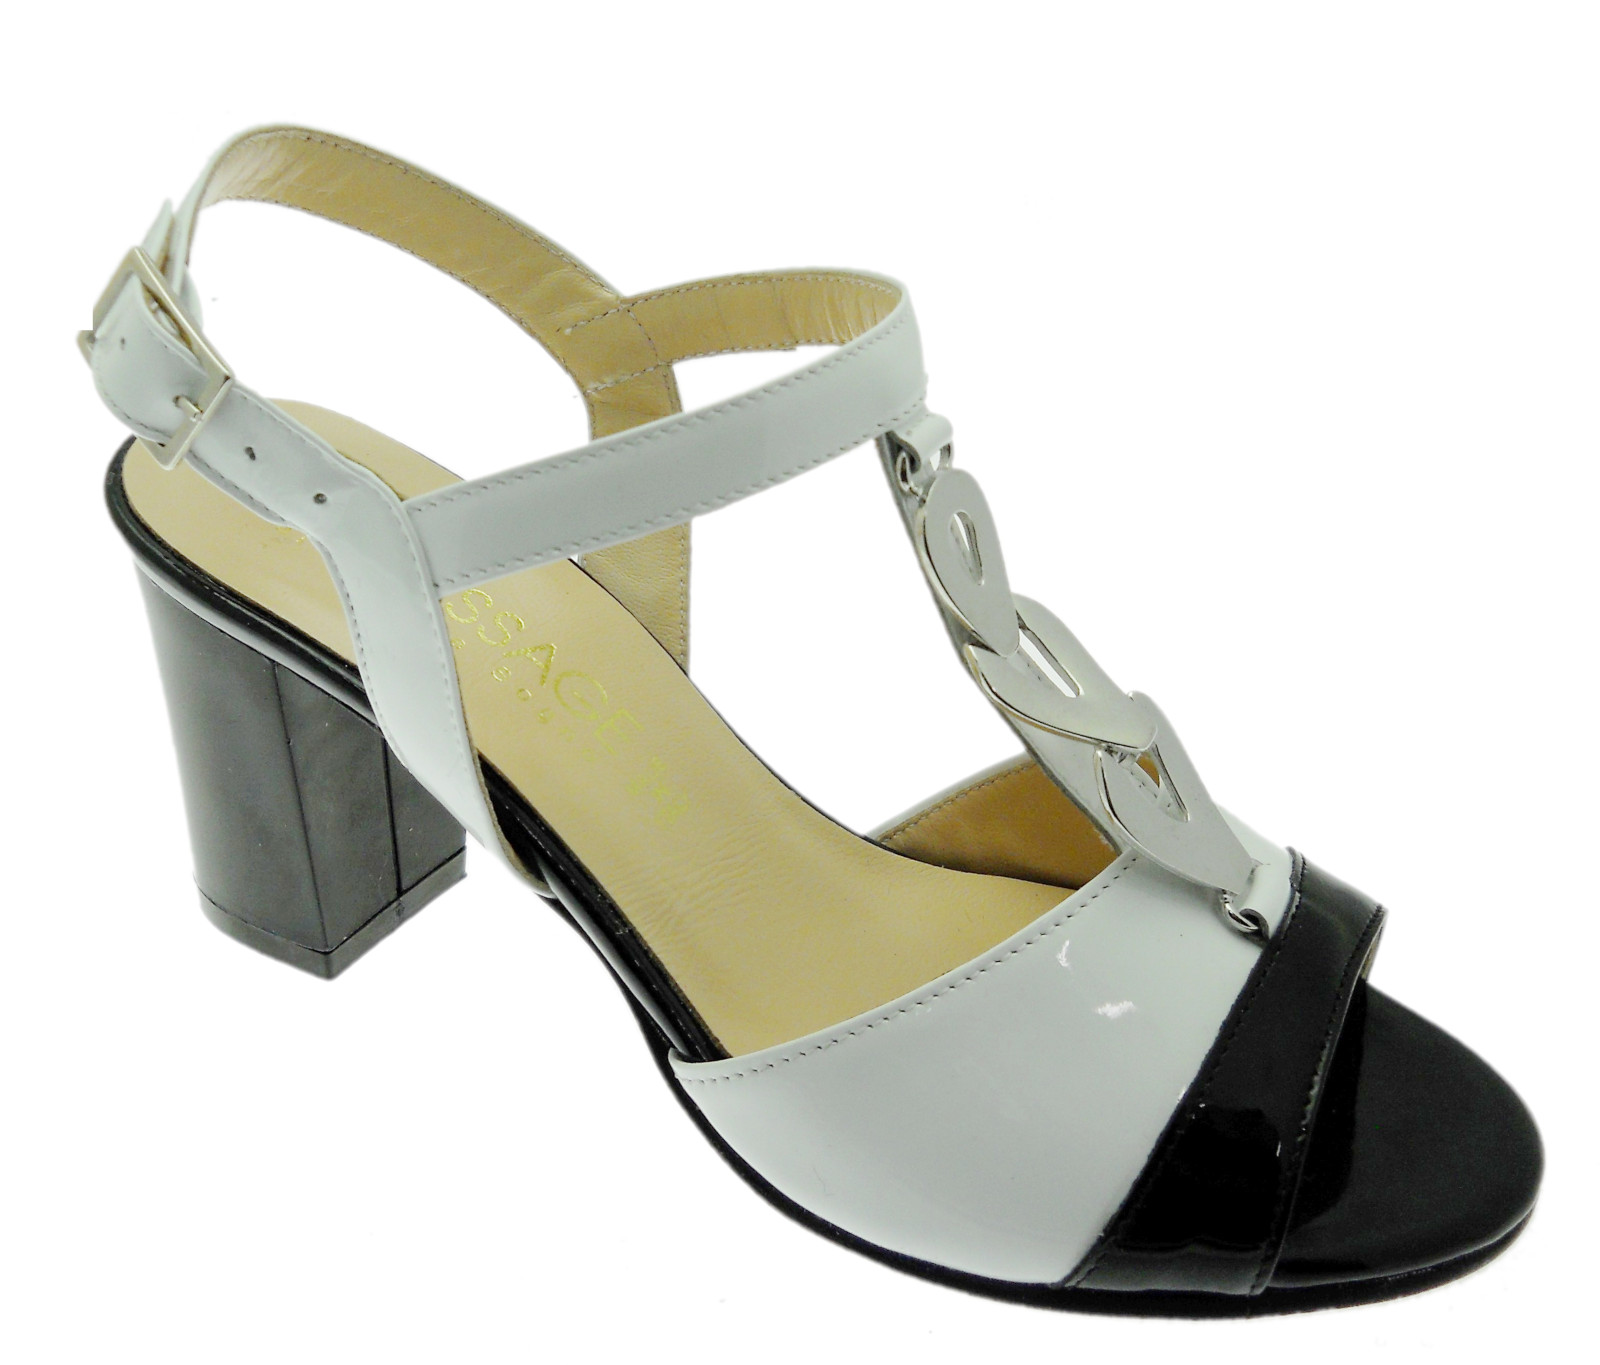 SOFFICE SOGNO 8133 sandalo bicolore bianco nero